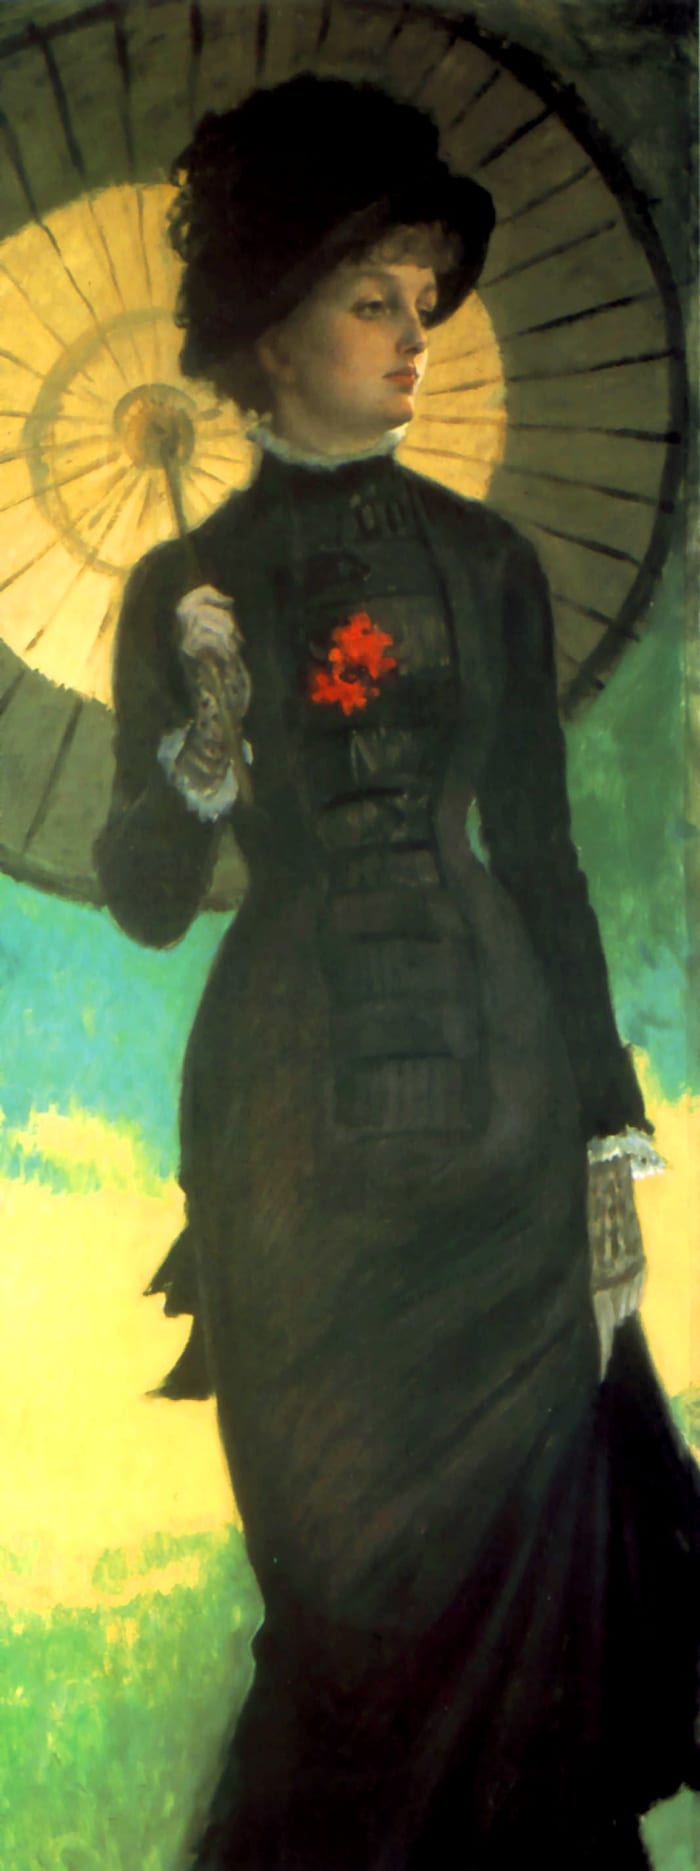 Robe ligne princesse avec jupe très étroite et parasol vers 1879